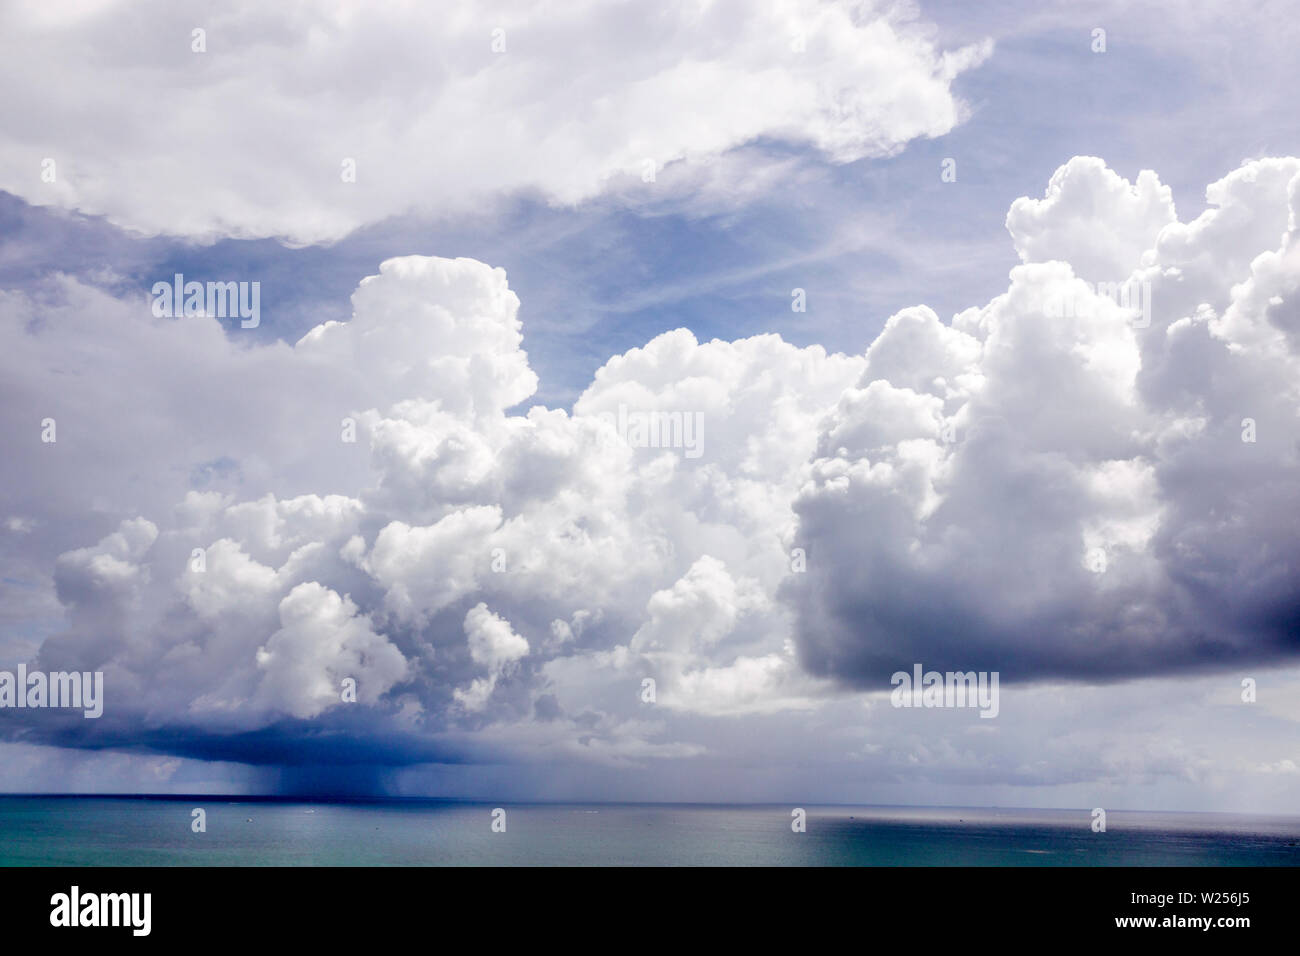 Miami Beach Florida, North Beach, Atlantischer Ozean, Wetter, Sturm, Cumulonimbus Wolken, Regen, FL190615033 Stockfoto